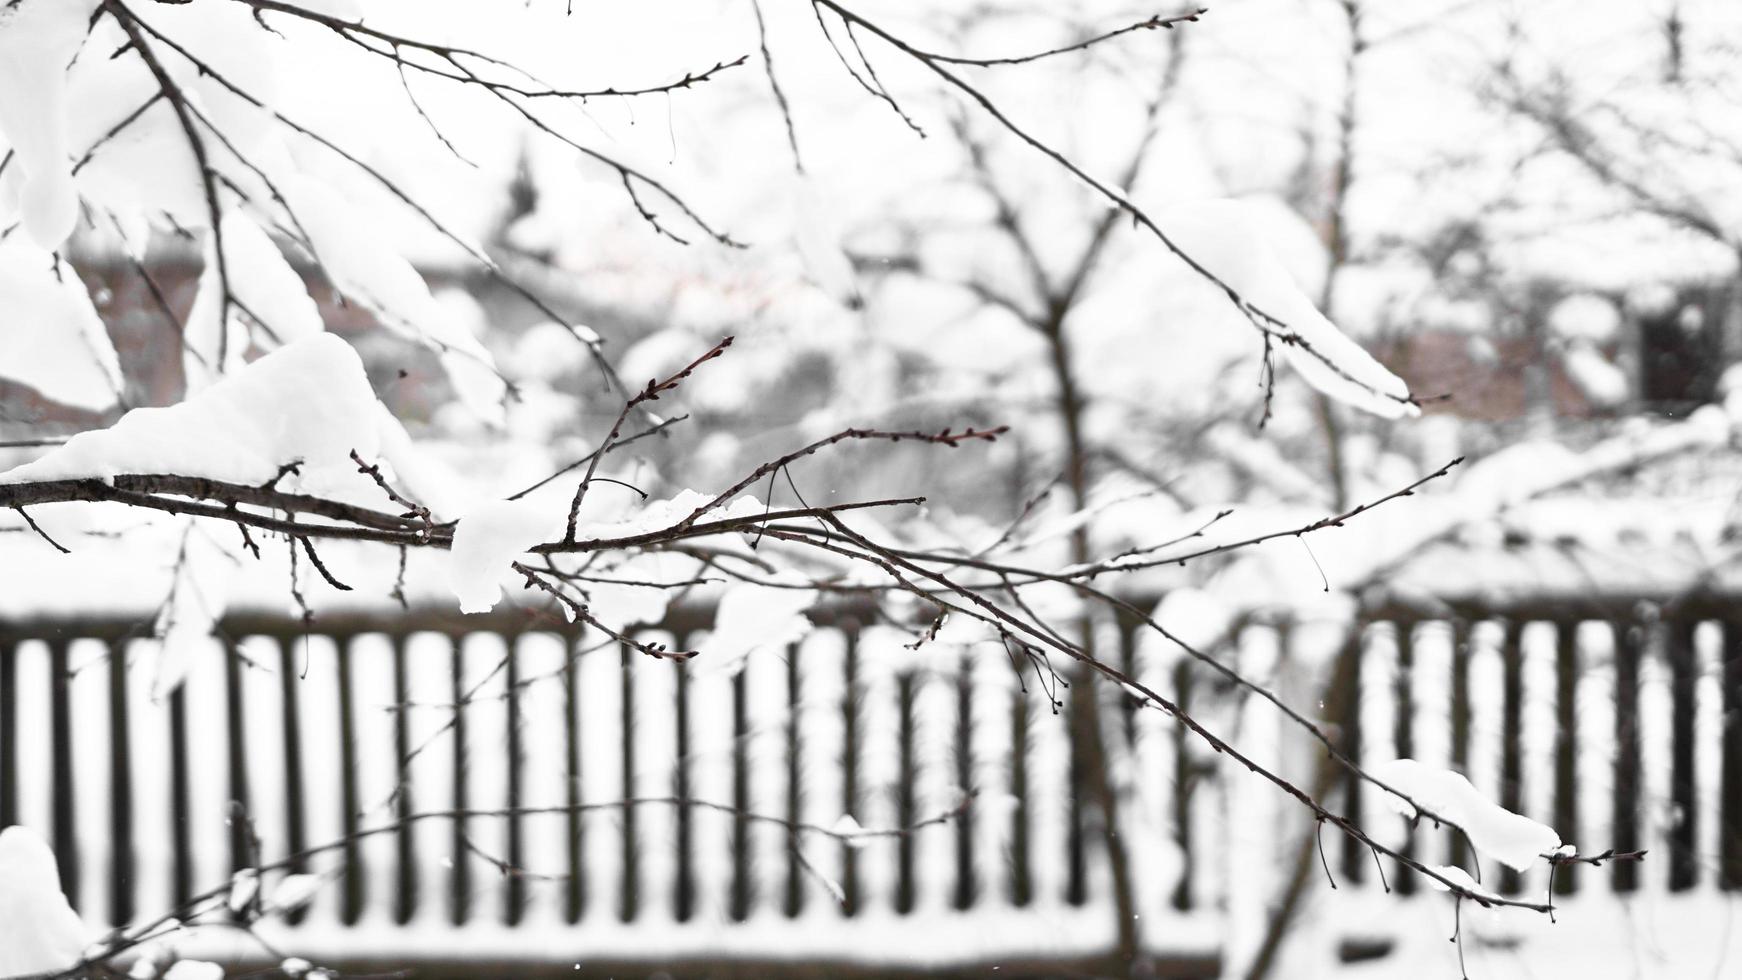 galhos de uma jovem macieira sob a neve em uma manhã ensolarada e gelada foto